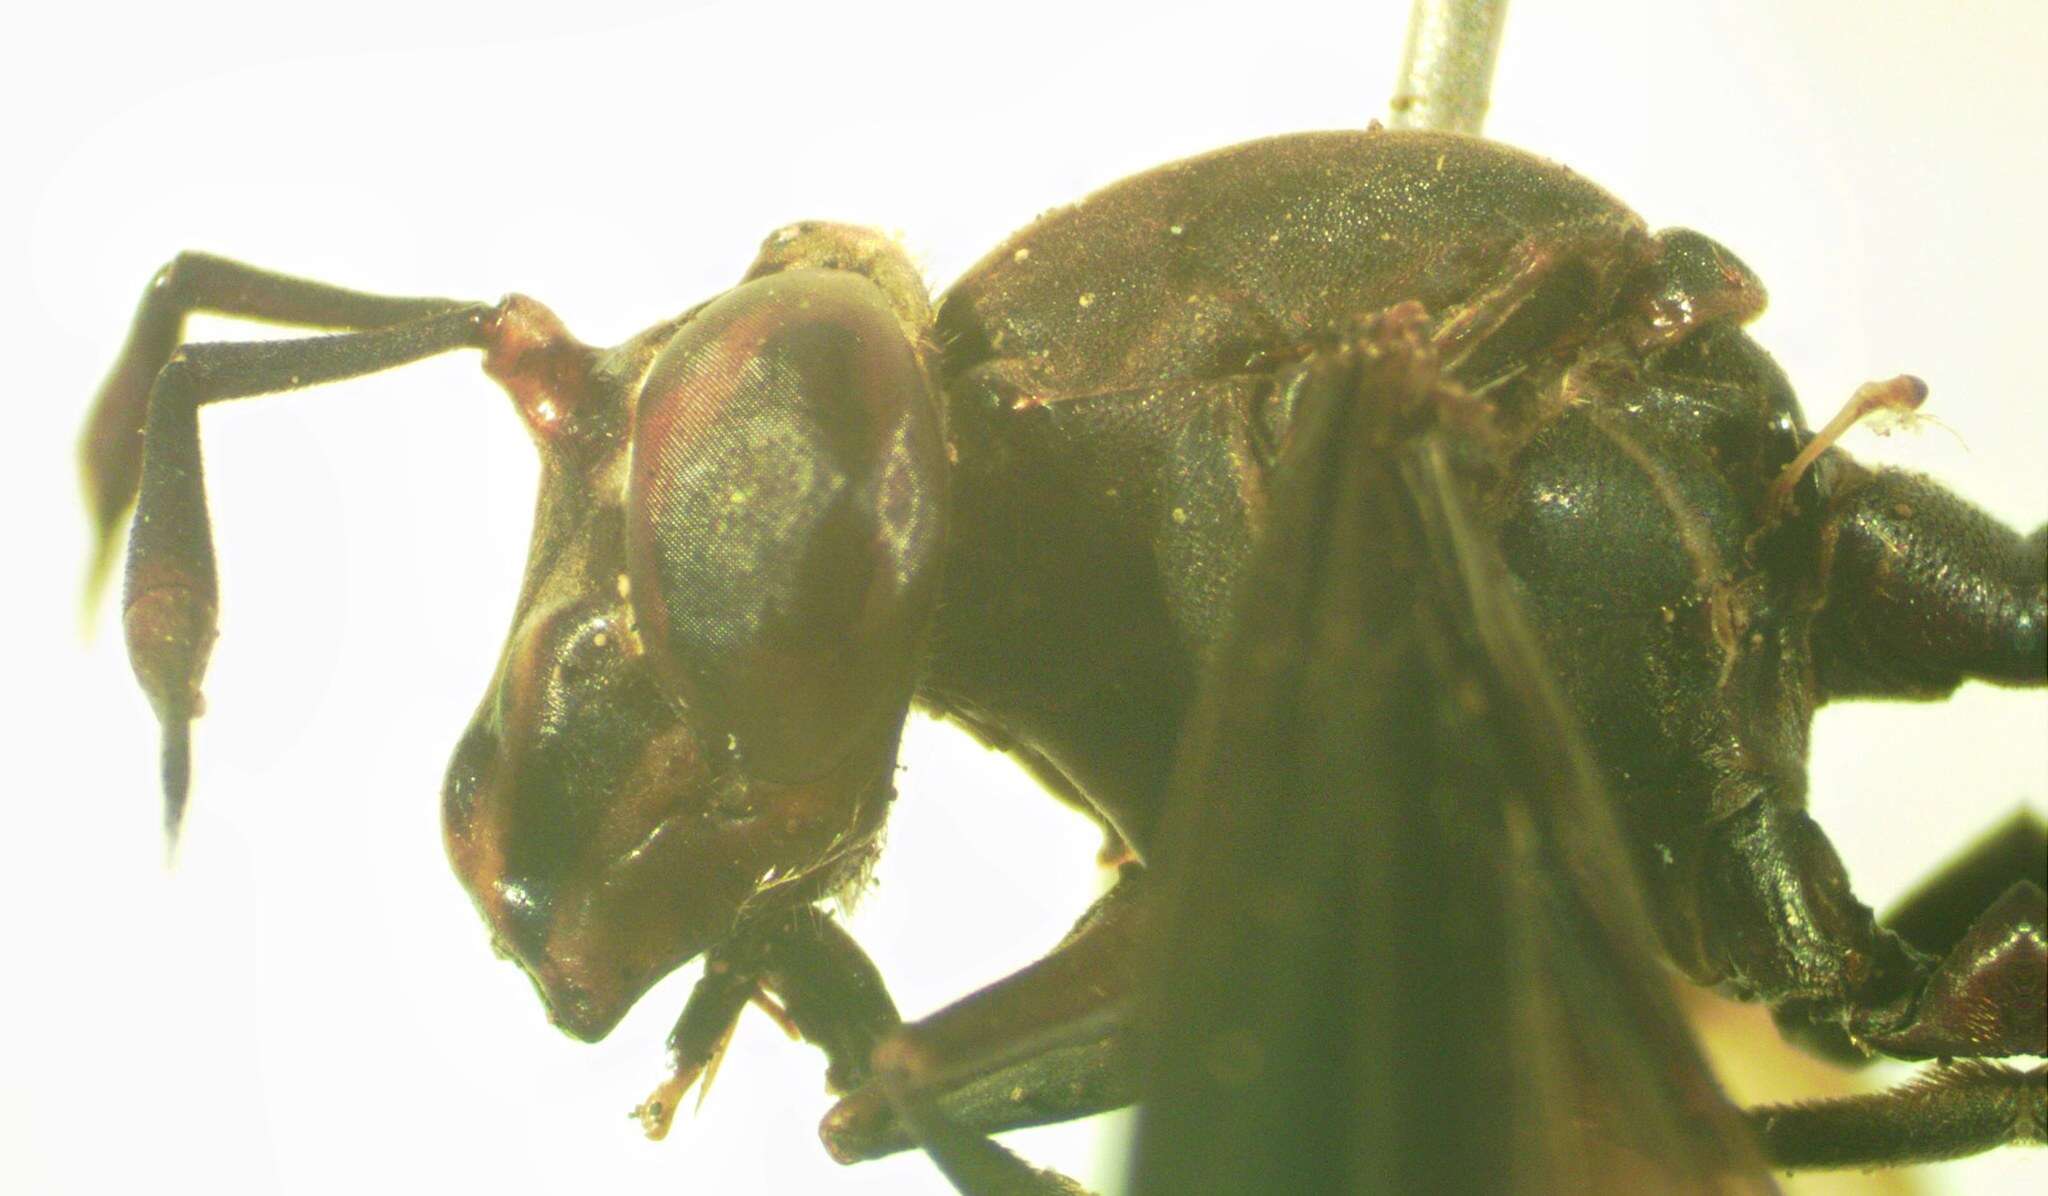 Image of Polybiomyia schwarzi Shannon 1925